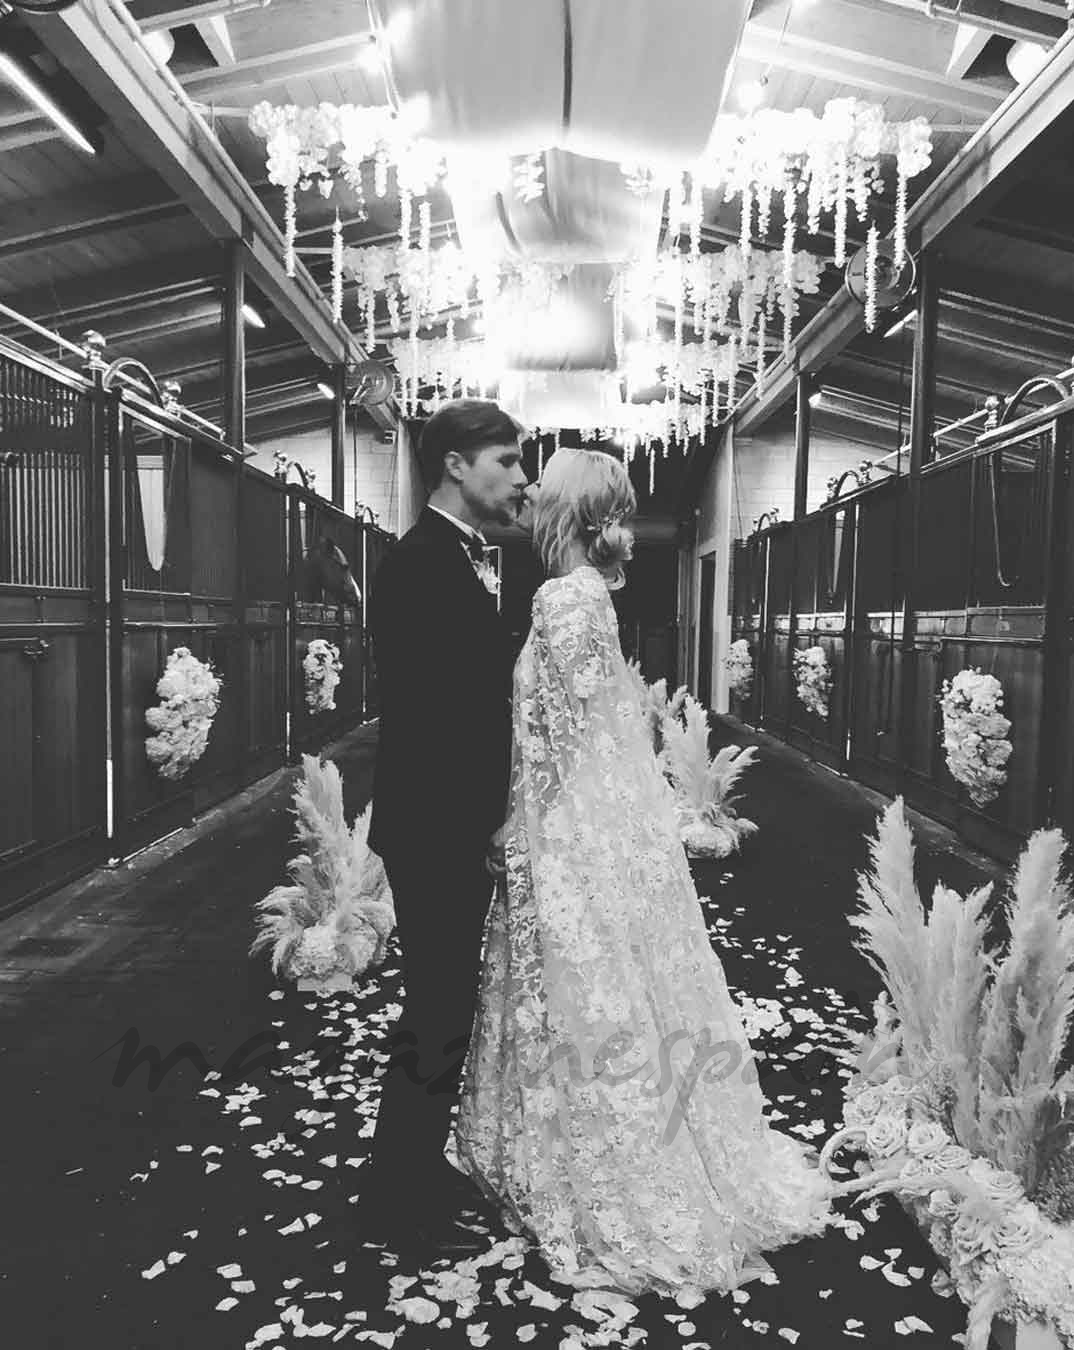 La romántica boda, en un establo, de Kaley Cuoco con el multimillonario Karl Cook